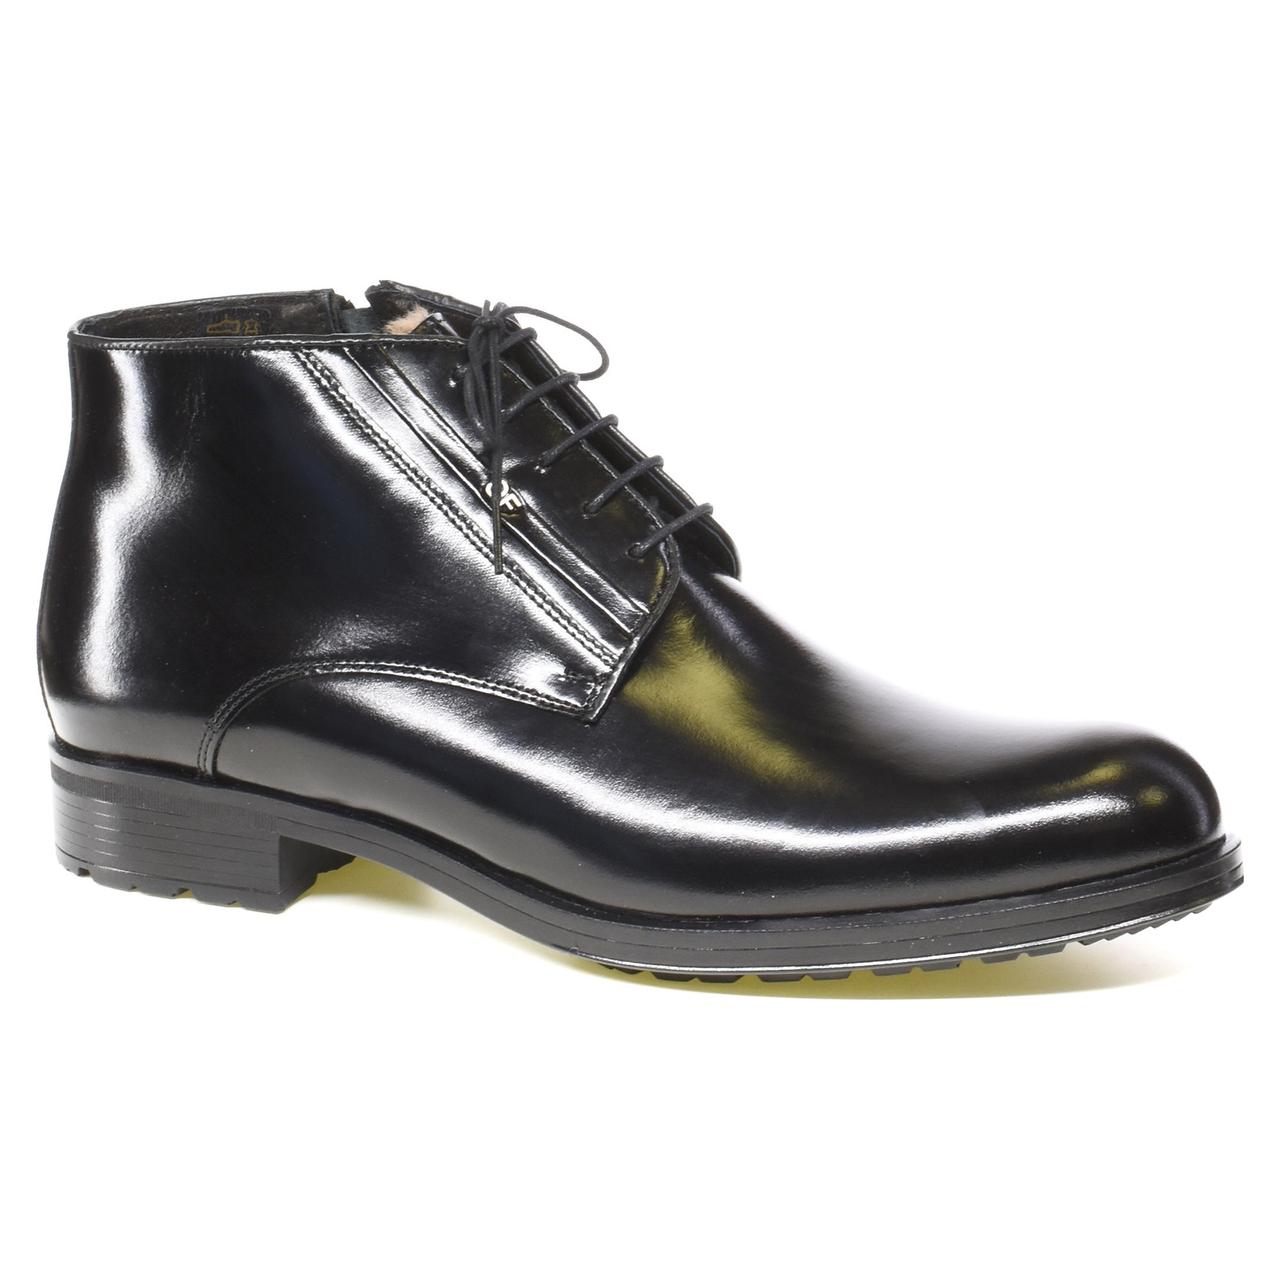 

Мужские модельные ботинки Fabio Conti код: 12975, размеры: 40, 41, 42, 43, 44